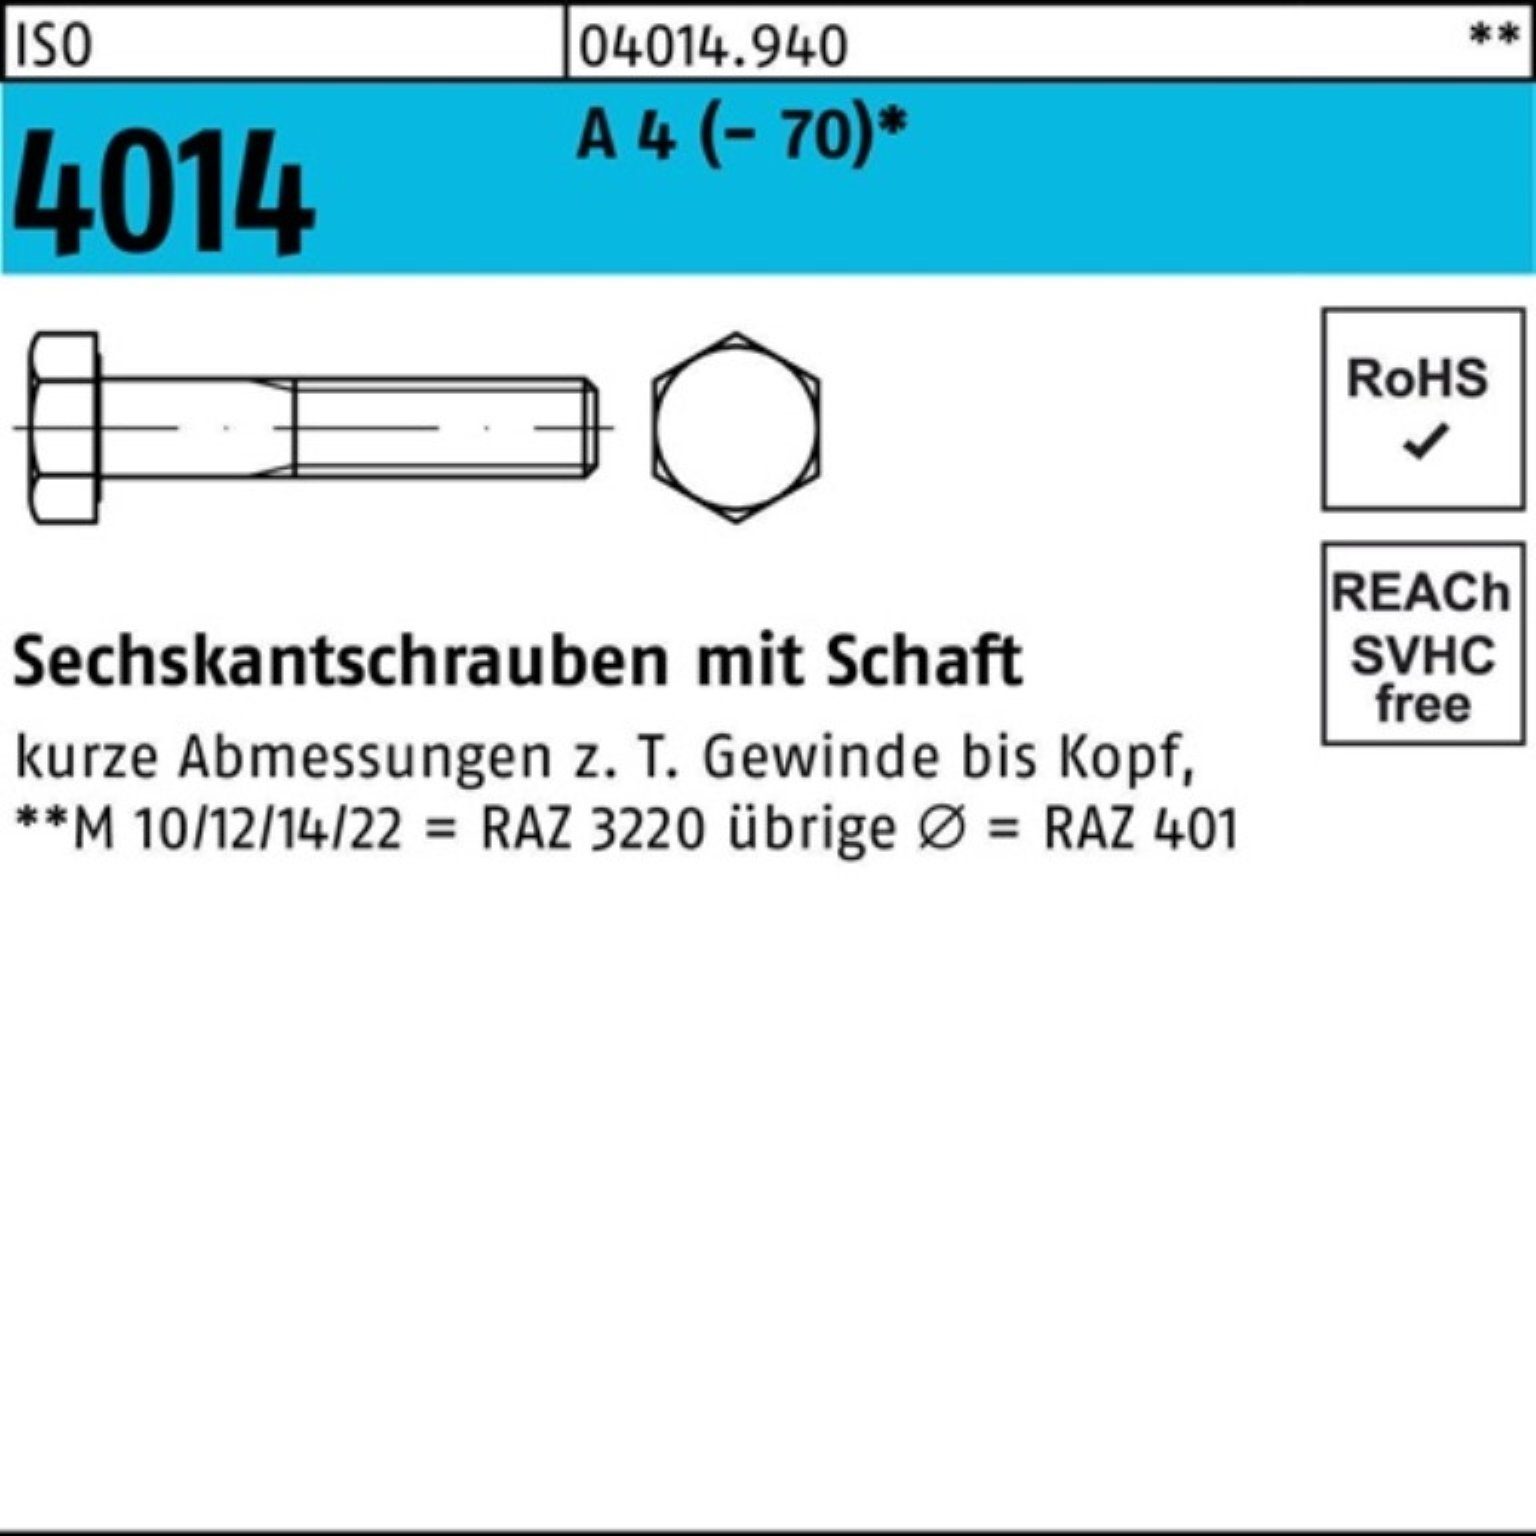 Bufab Sechskantschraube 100er Pack Sechskantschraube ISO 4014 Schaft M10x 90 A 4 (70) 50 St